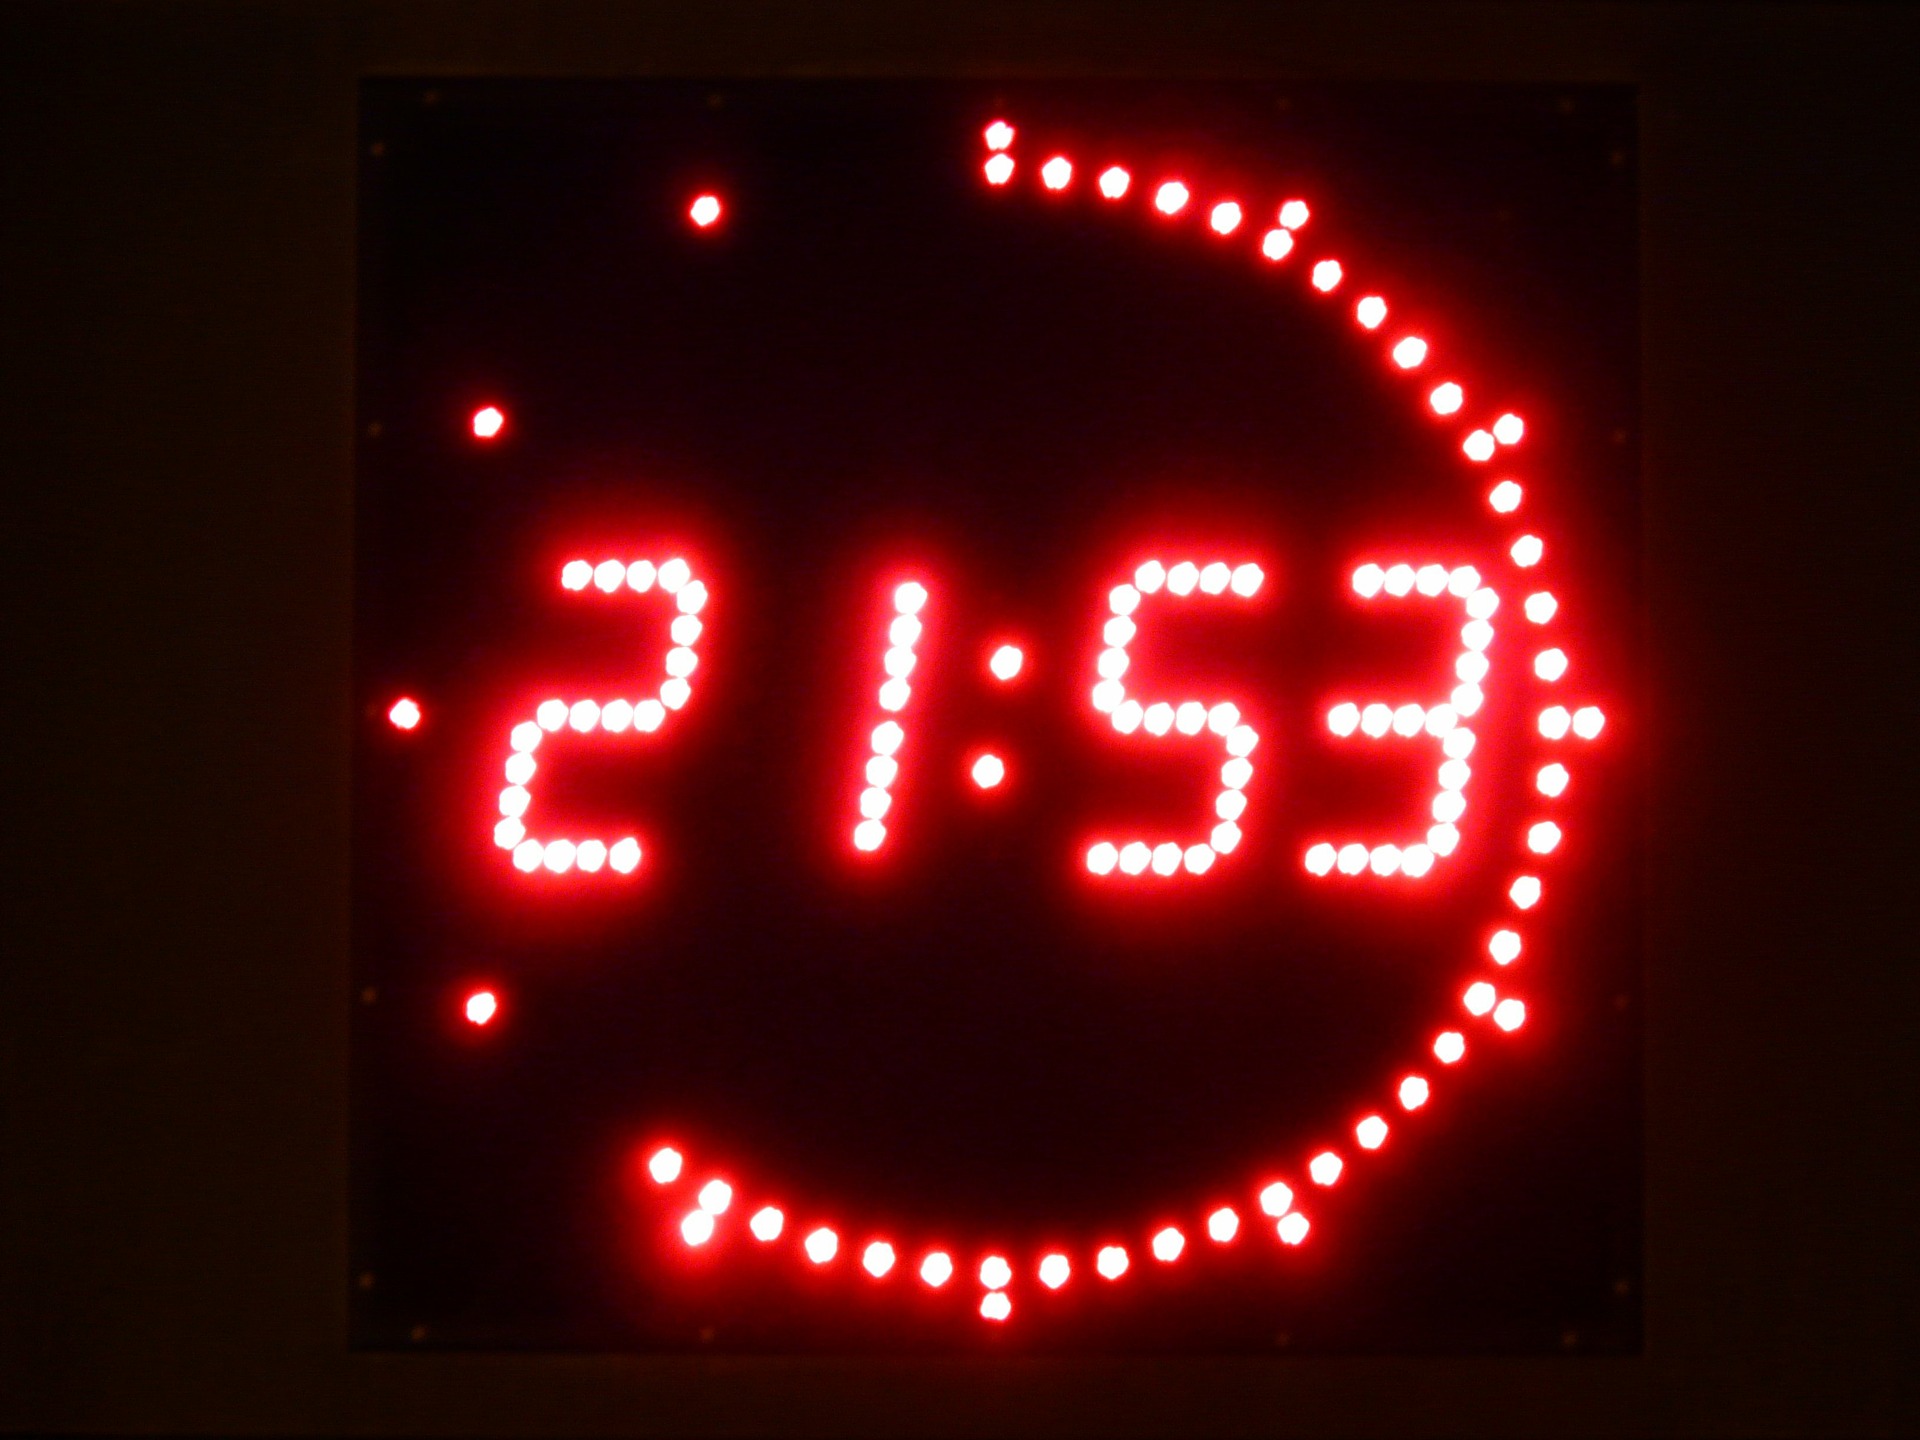 digital-clock